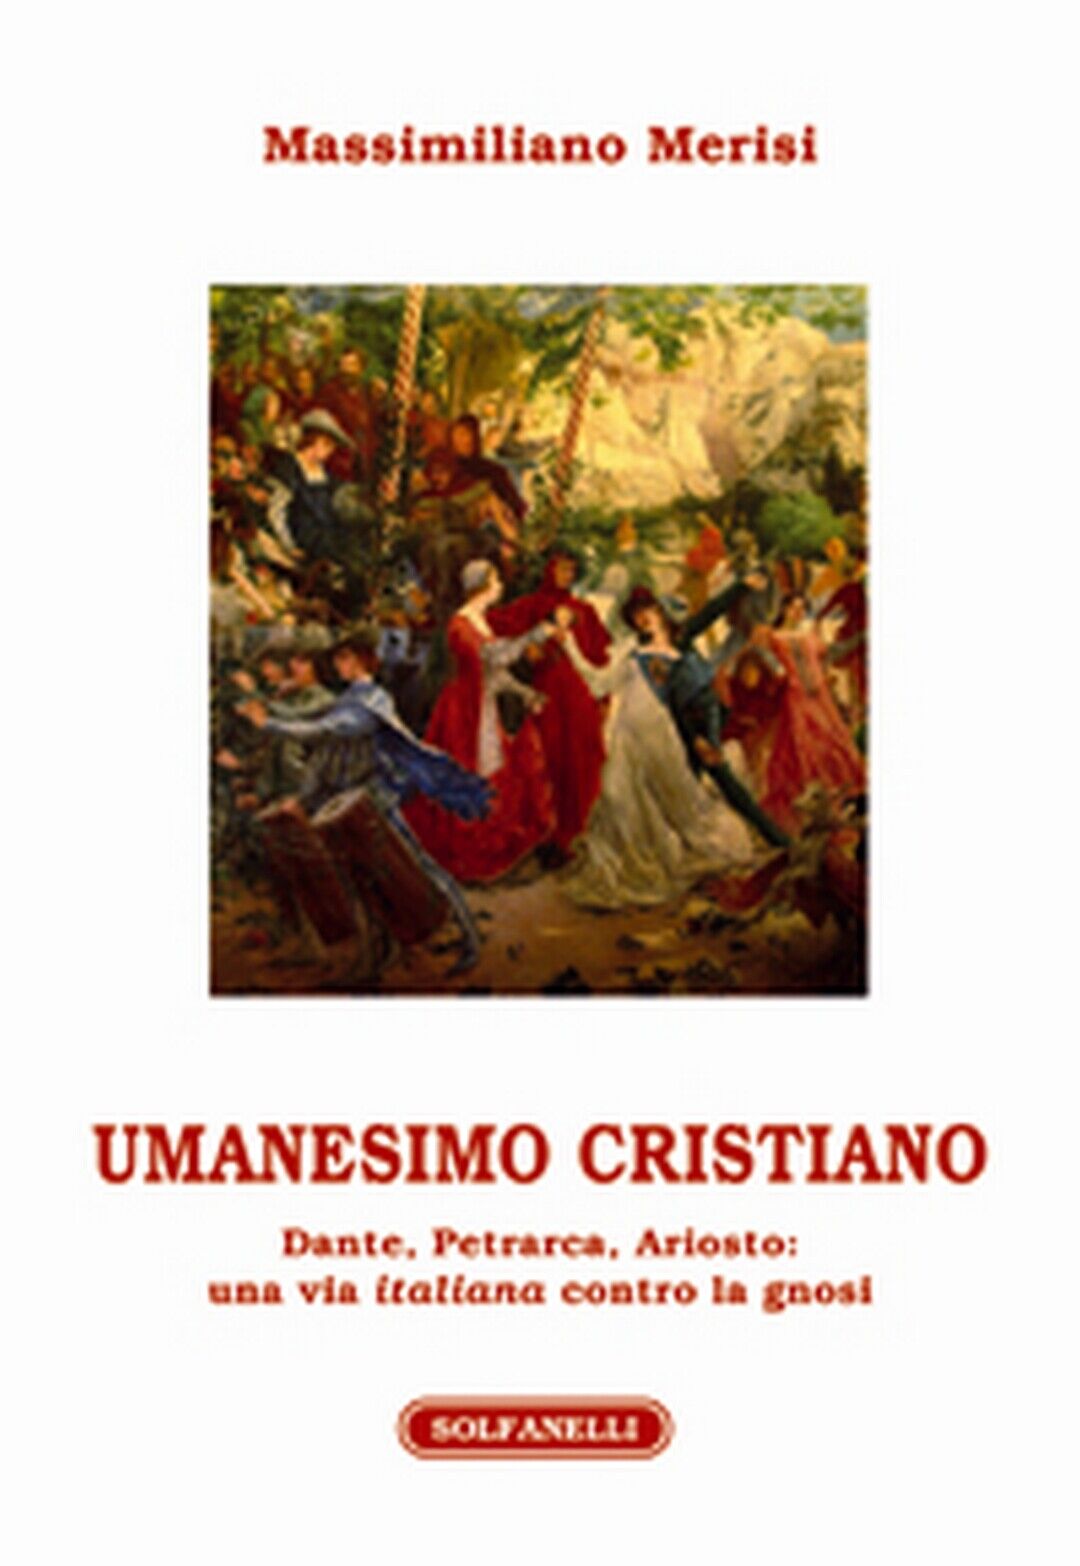 UMANESIMO CRISTIANO Dante, Petrarca, Ariosto: una via italiana contro la gnosi